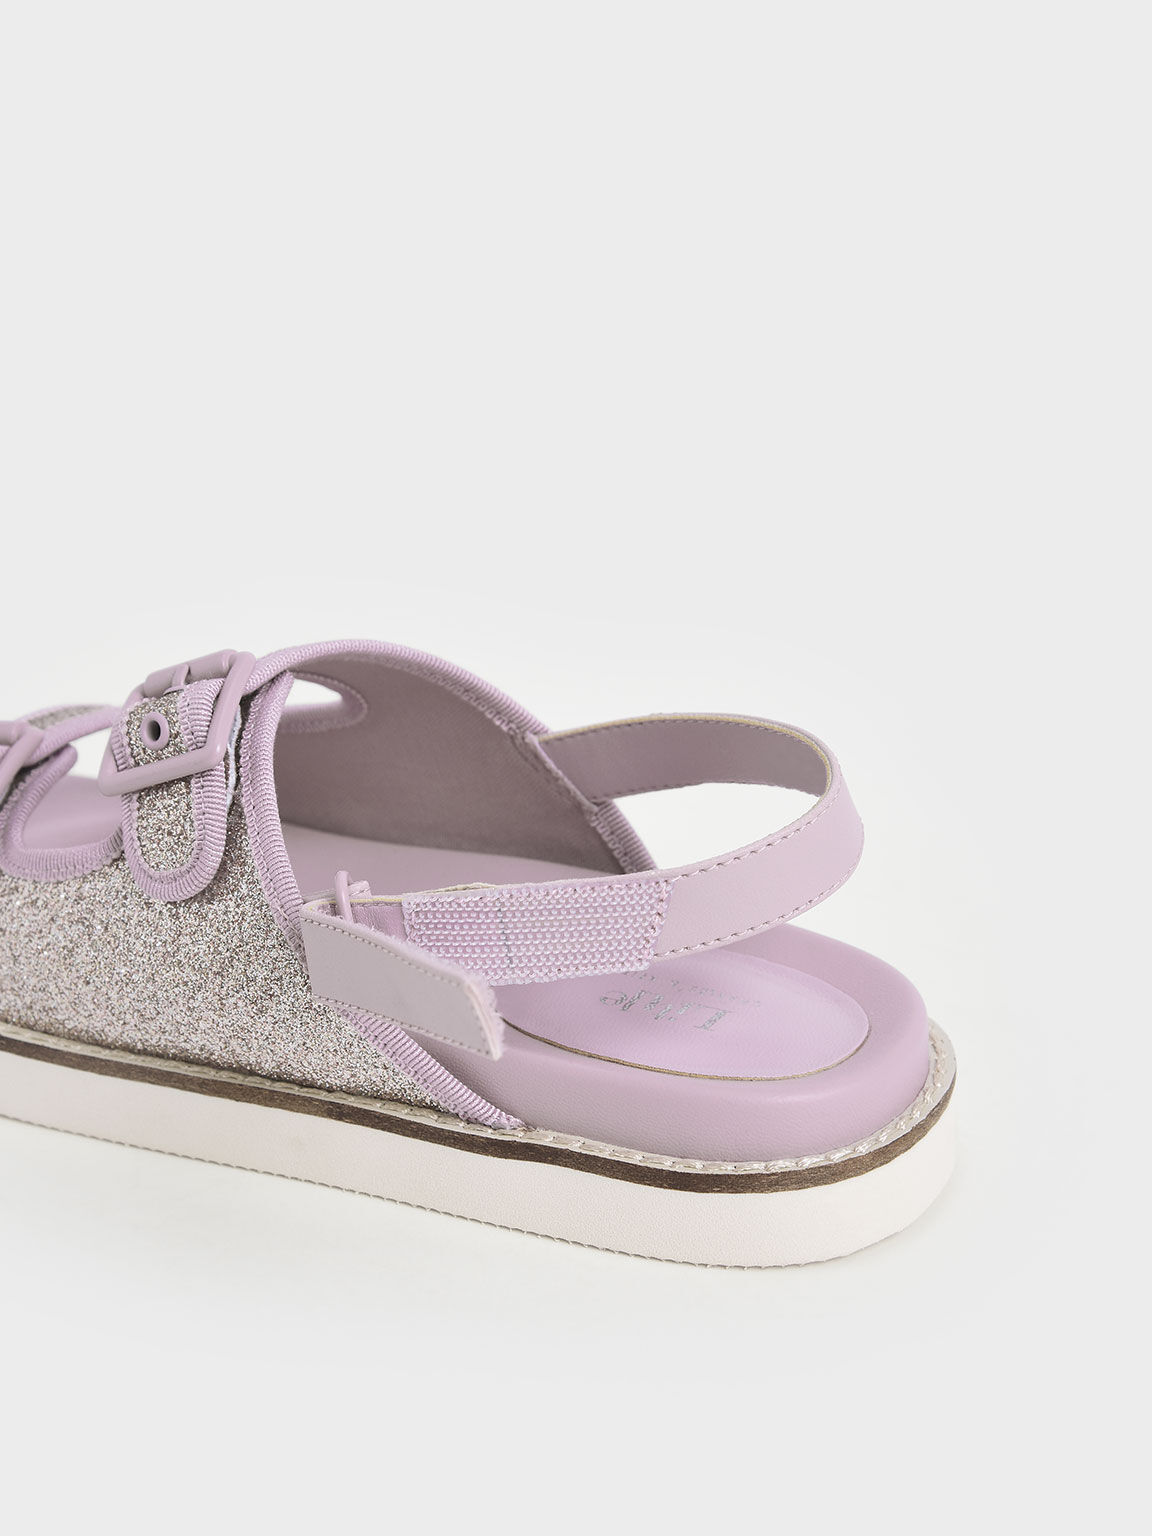 兒童雙帶釦涼鞋, 紫丁香色, hi-res